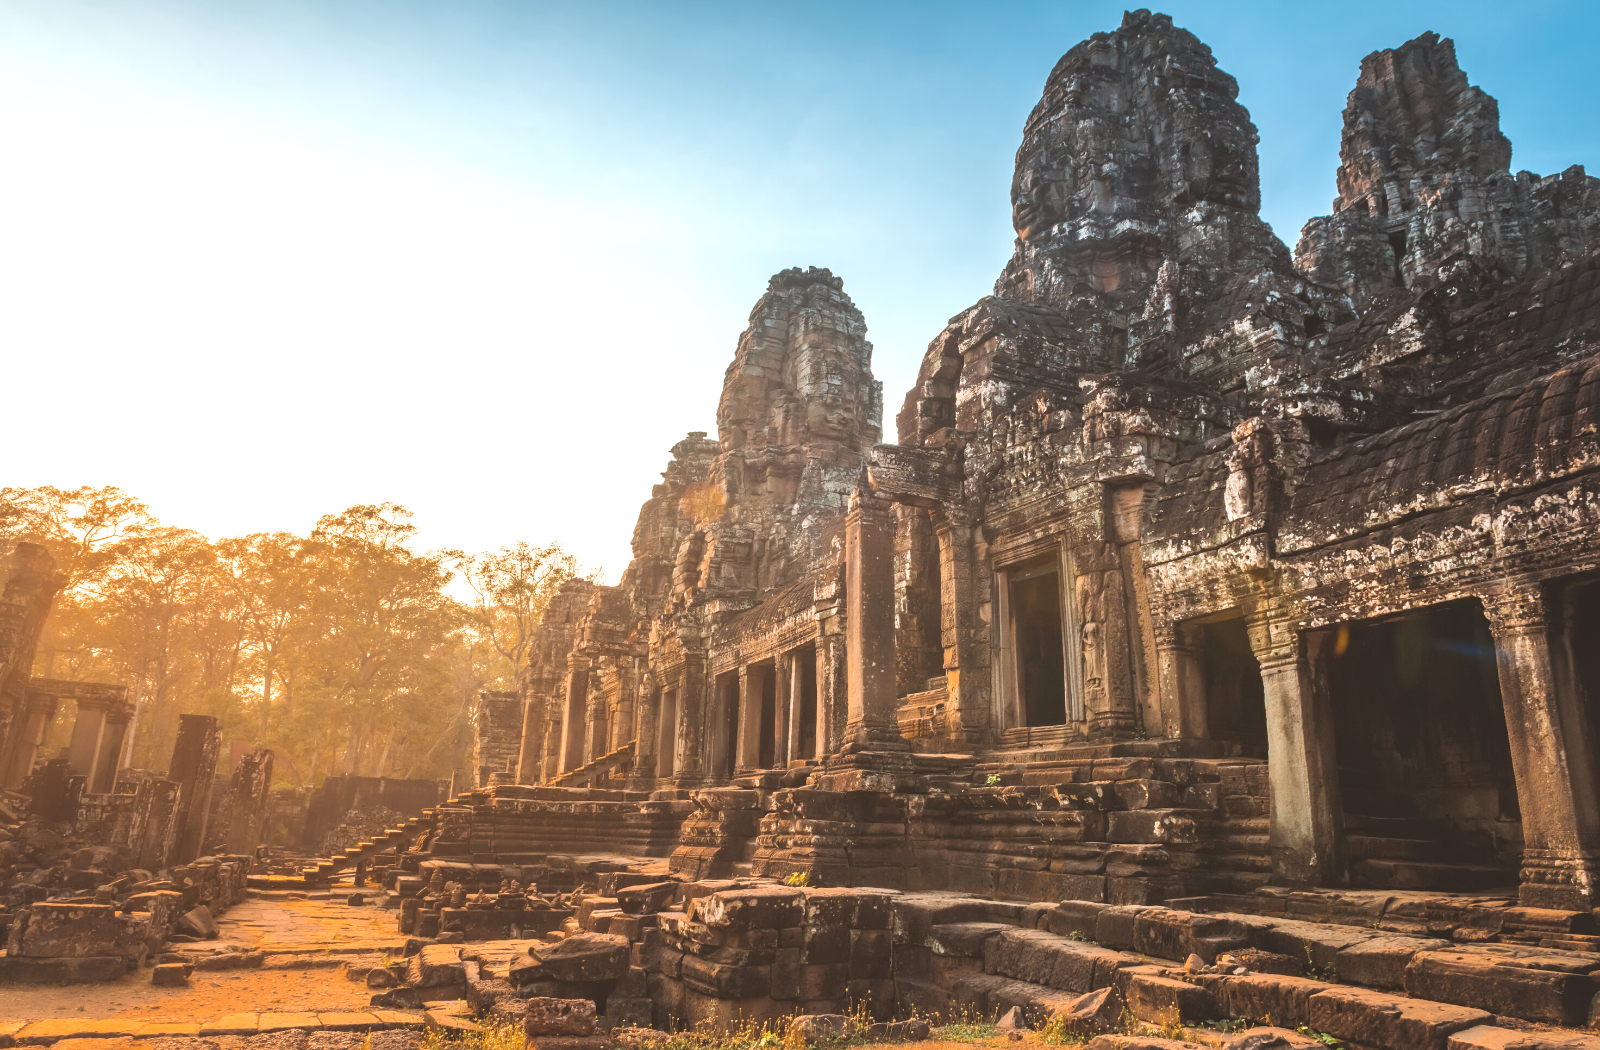 Bayon Temple at Angkor Thom, Cambodia